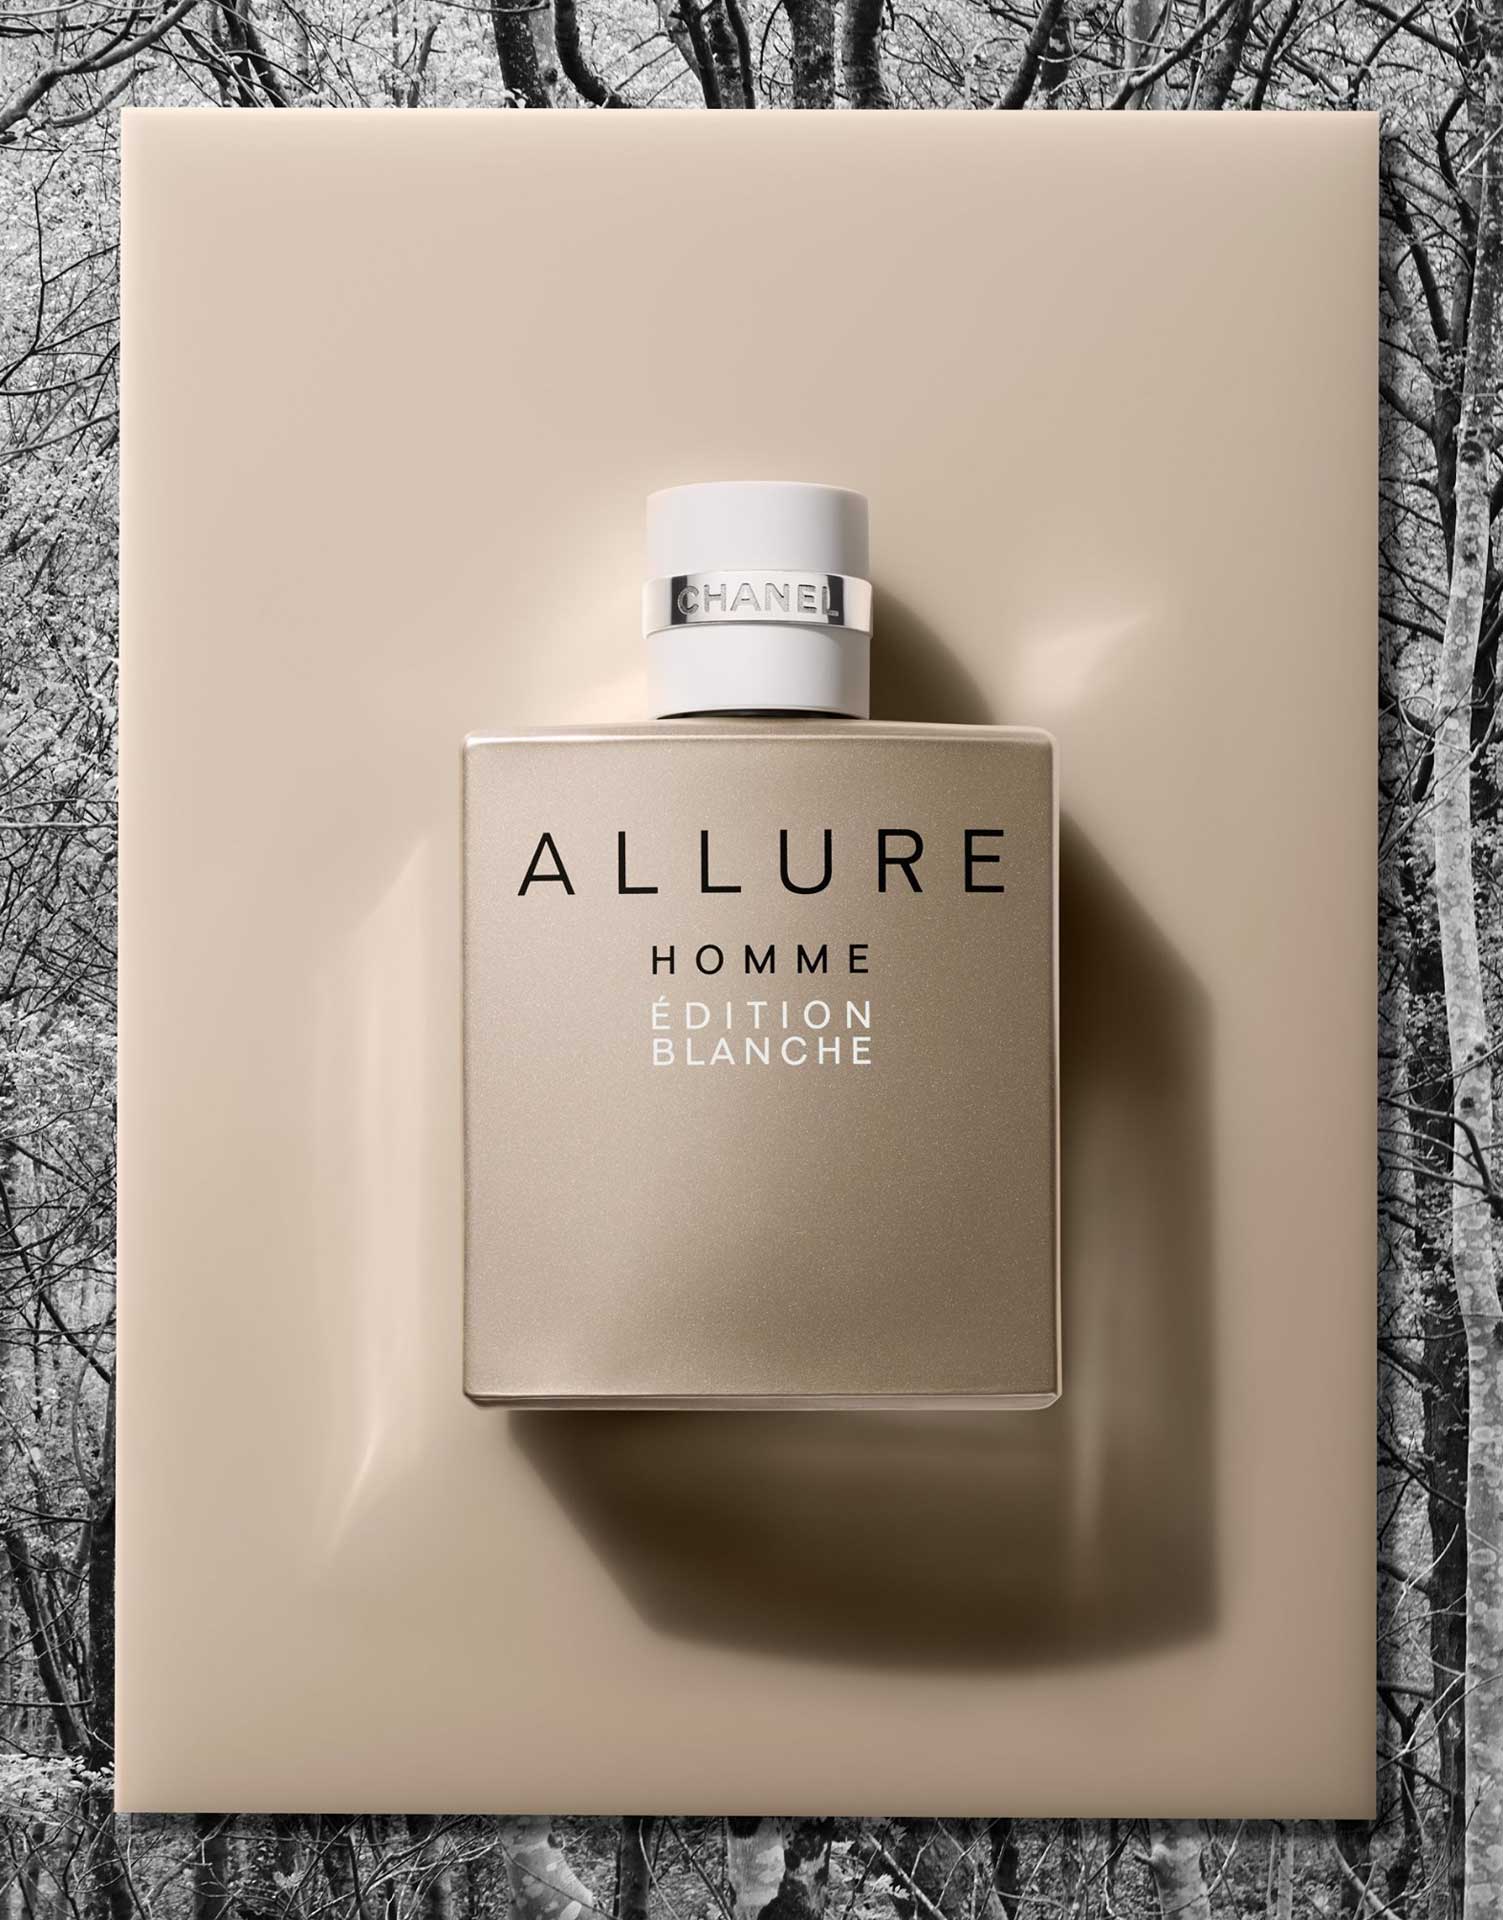  Chanel Allure Homme Edition Blanche Eau De Parfum